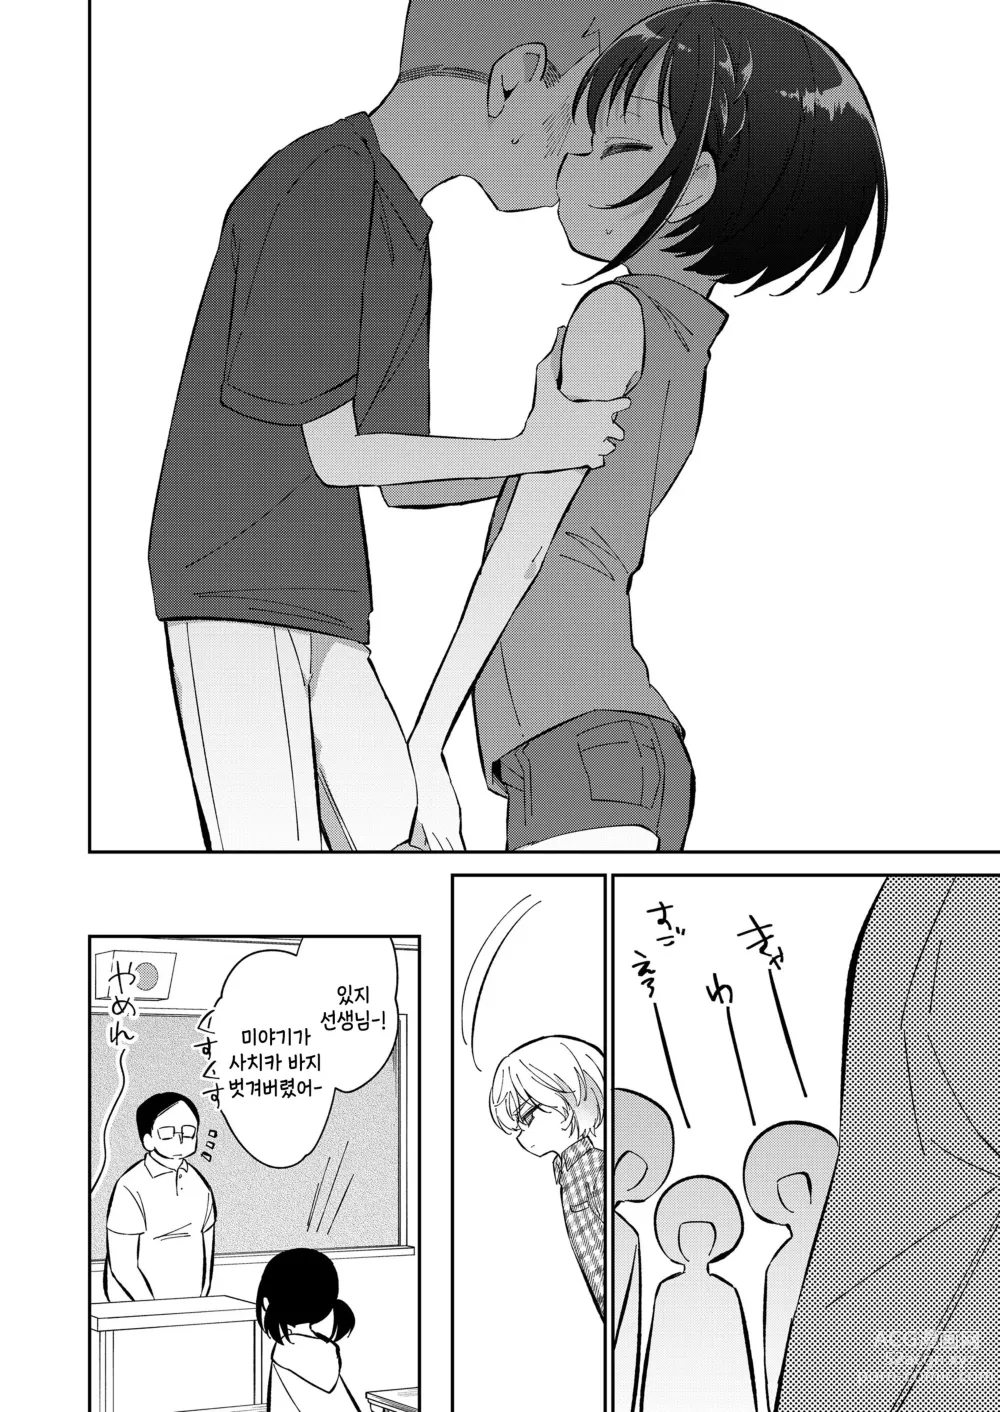 Page 42 of manga Watashi ga iki wo shiteru basho